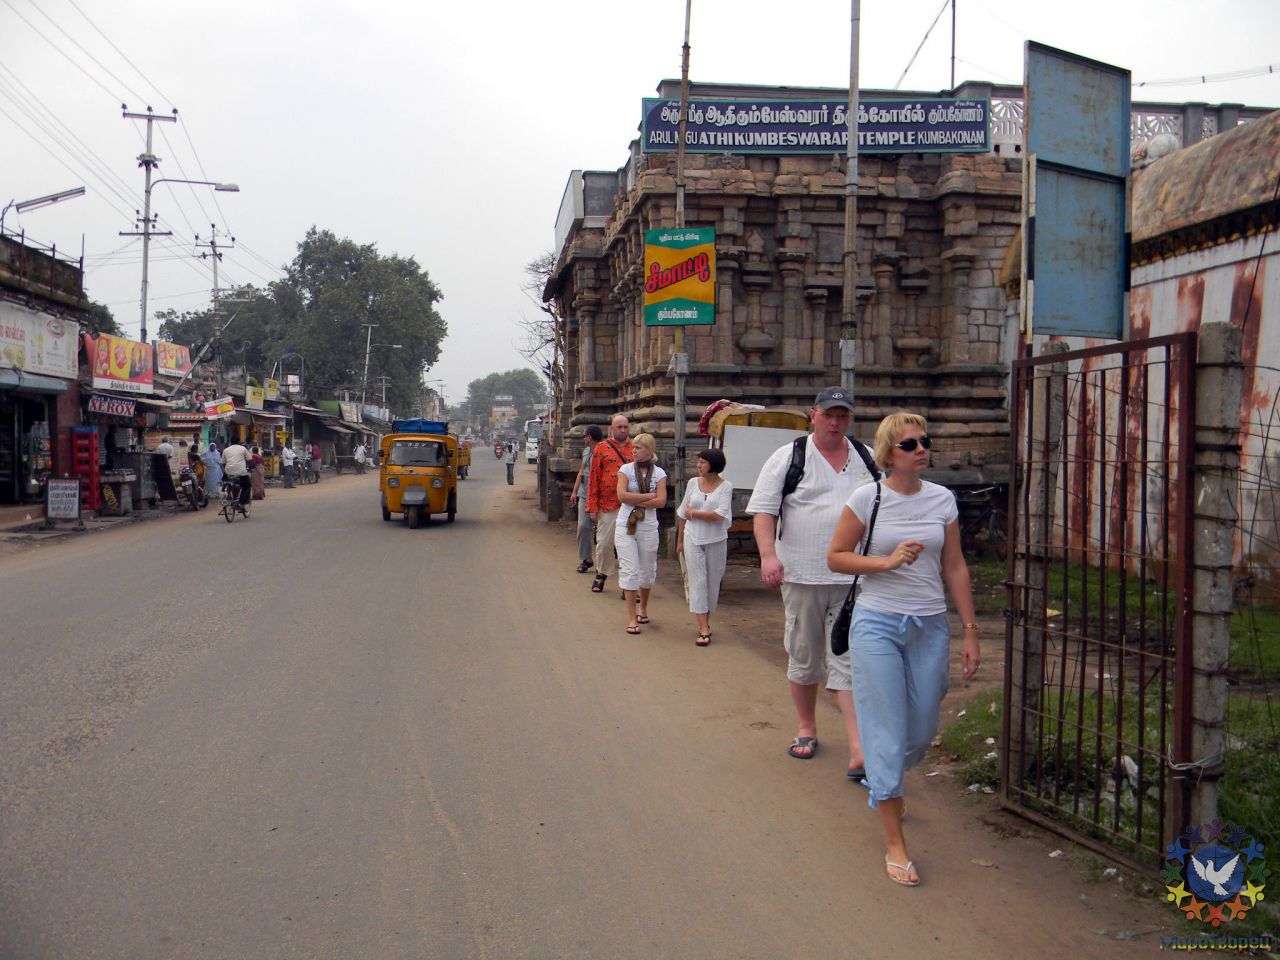 Переезд в следующий в город Кумбаконам Шиваитский храм Ади Кумбешвара (Adi Kumbeshwarar) - группа в Индии, ноябрь 2011, часть 2 (стихии Огня и Эфира)